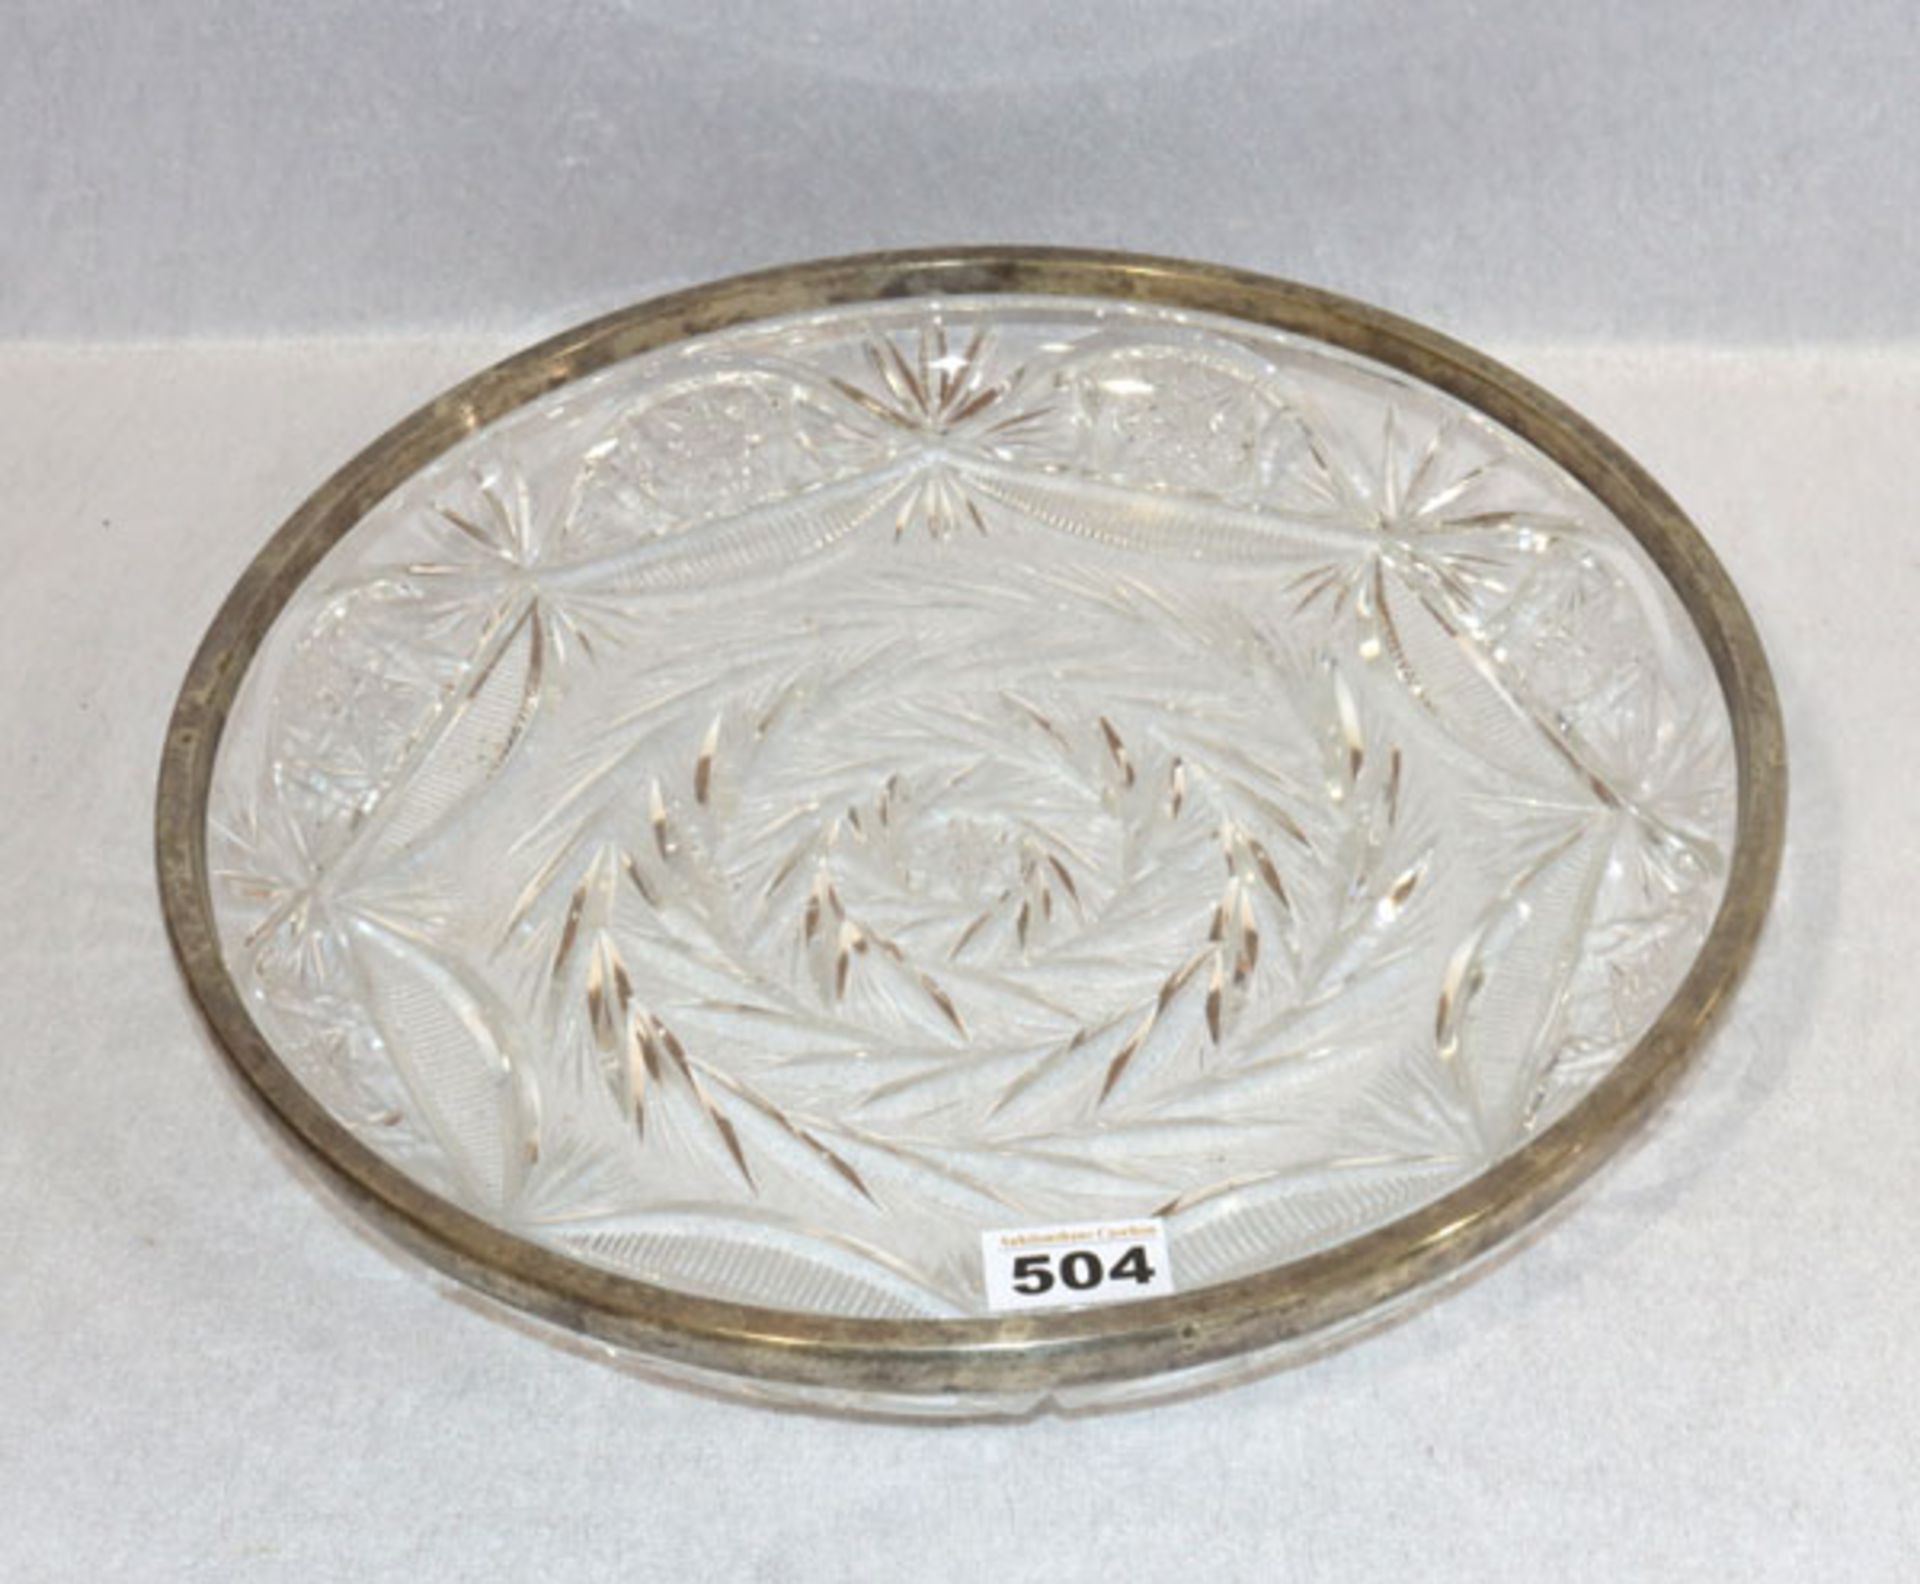 Kristallglas Schale mit Schliffdekor und 800 Silberrand, H 5,5 cm, D 36 cm, Gebrauchsspuren